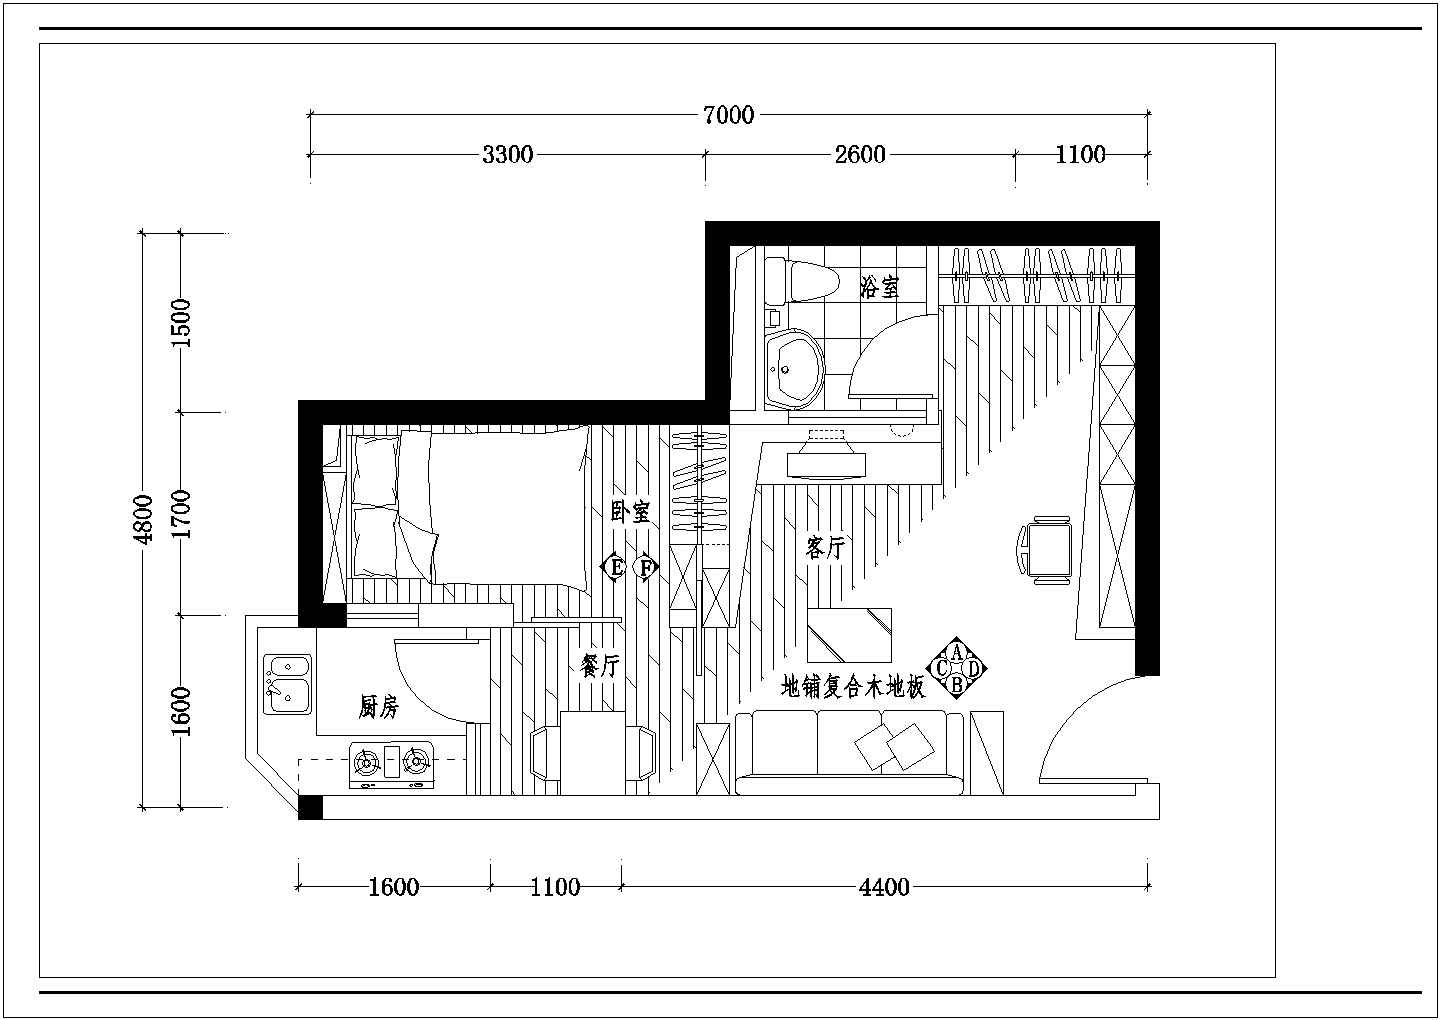 一室一厅住宅户型室内精装修cad平面施工详细布置图